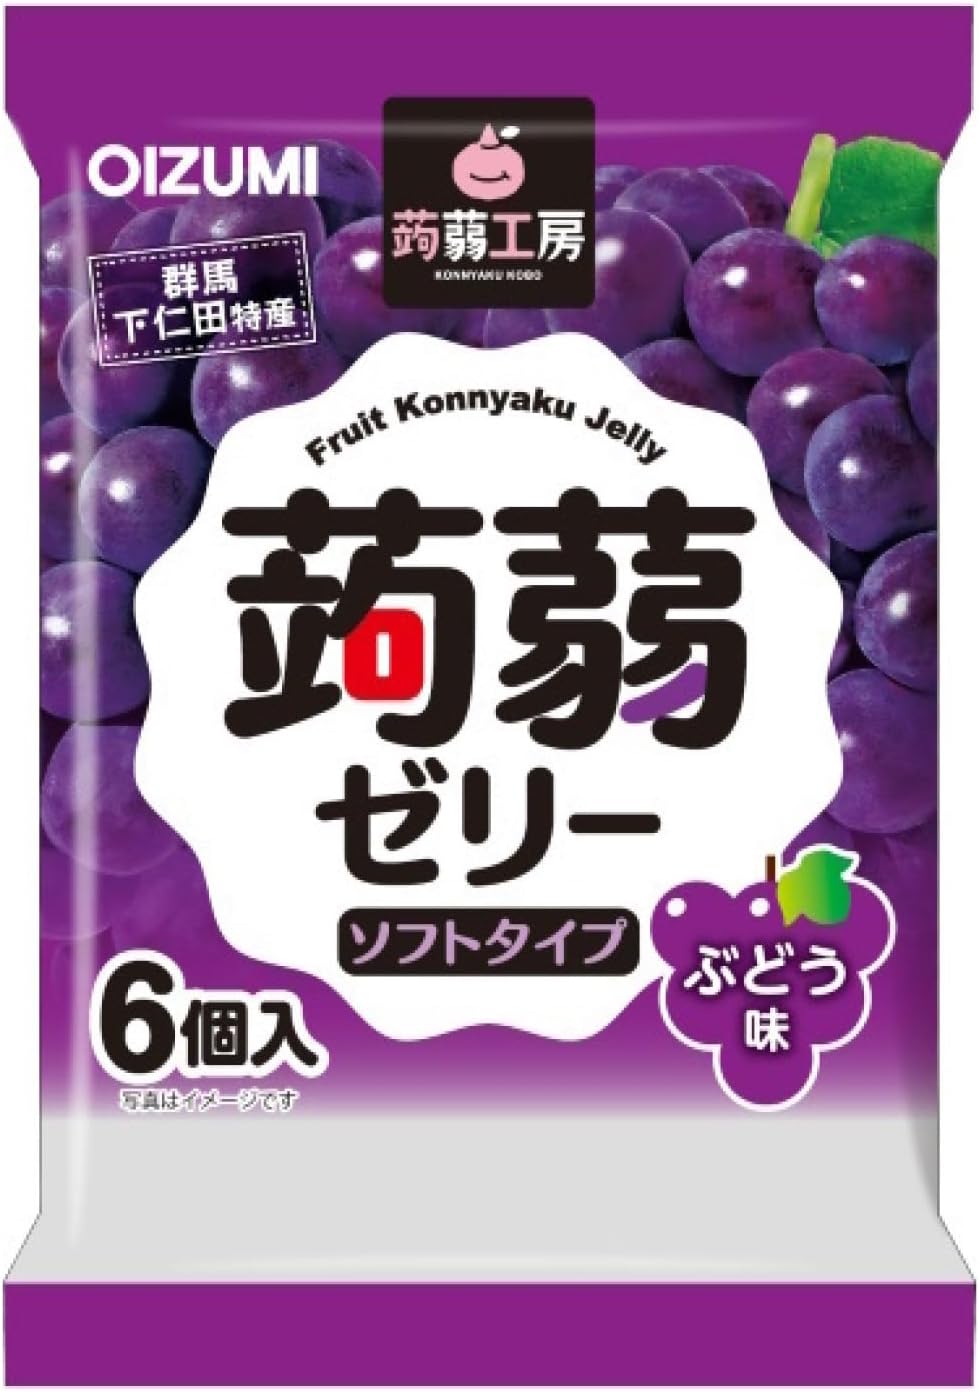 Shimonita Konjac Kobo Konjac Jelly Grape Flavor